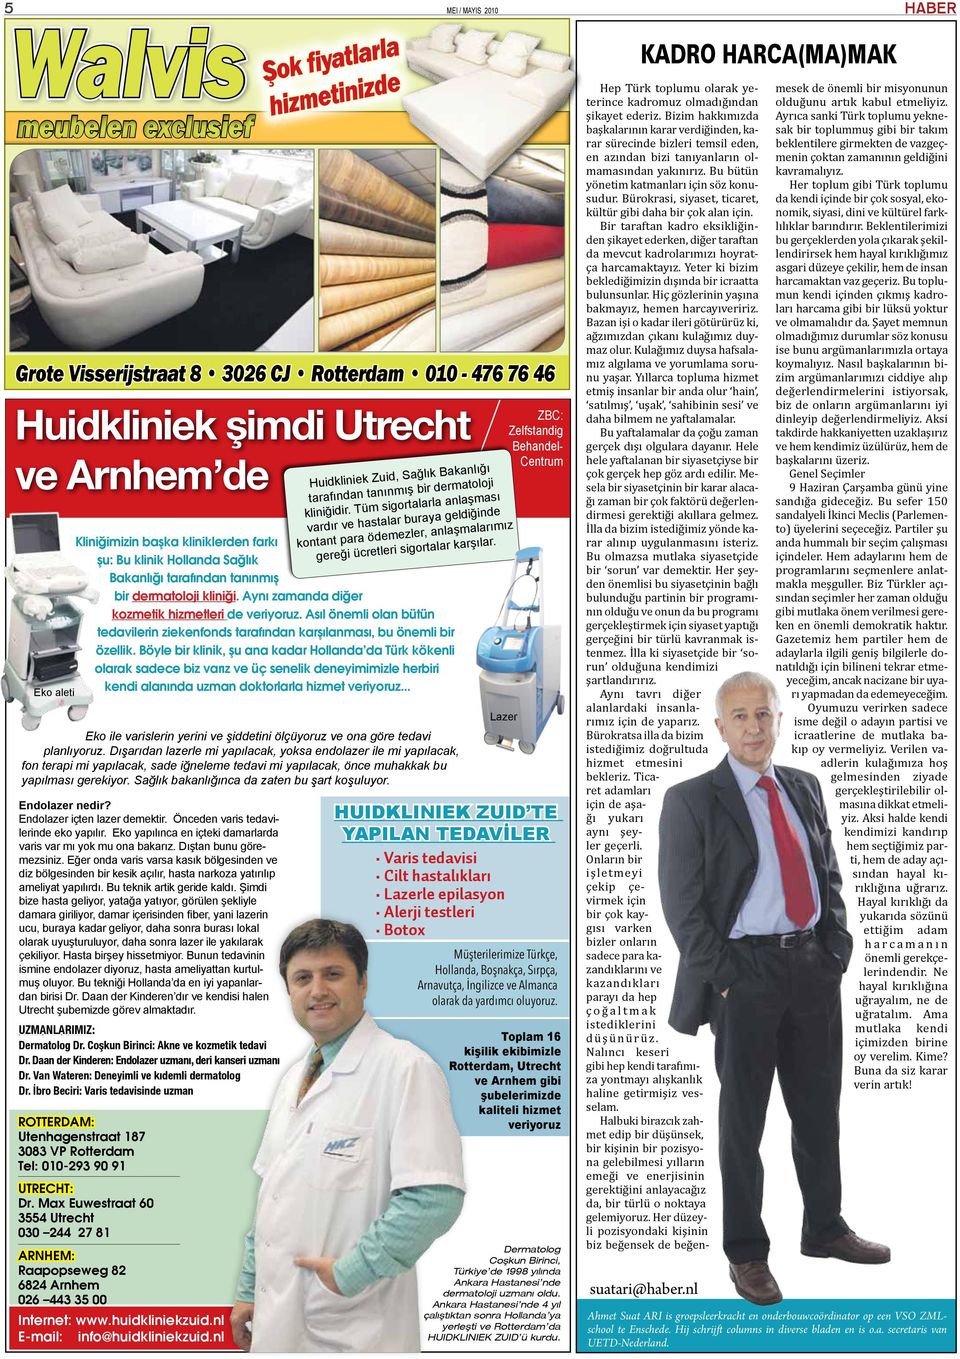 Böyle bir klinik, şu ana kadar Hollanda da Türk kökenli olarak sadece biz varız ve üç senelik deneyimimizle herbiri kendi alanında uzman doktorlarla hizmet veriyoruz.